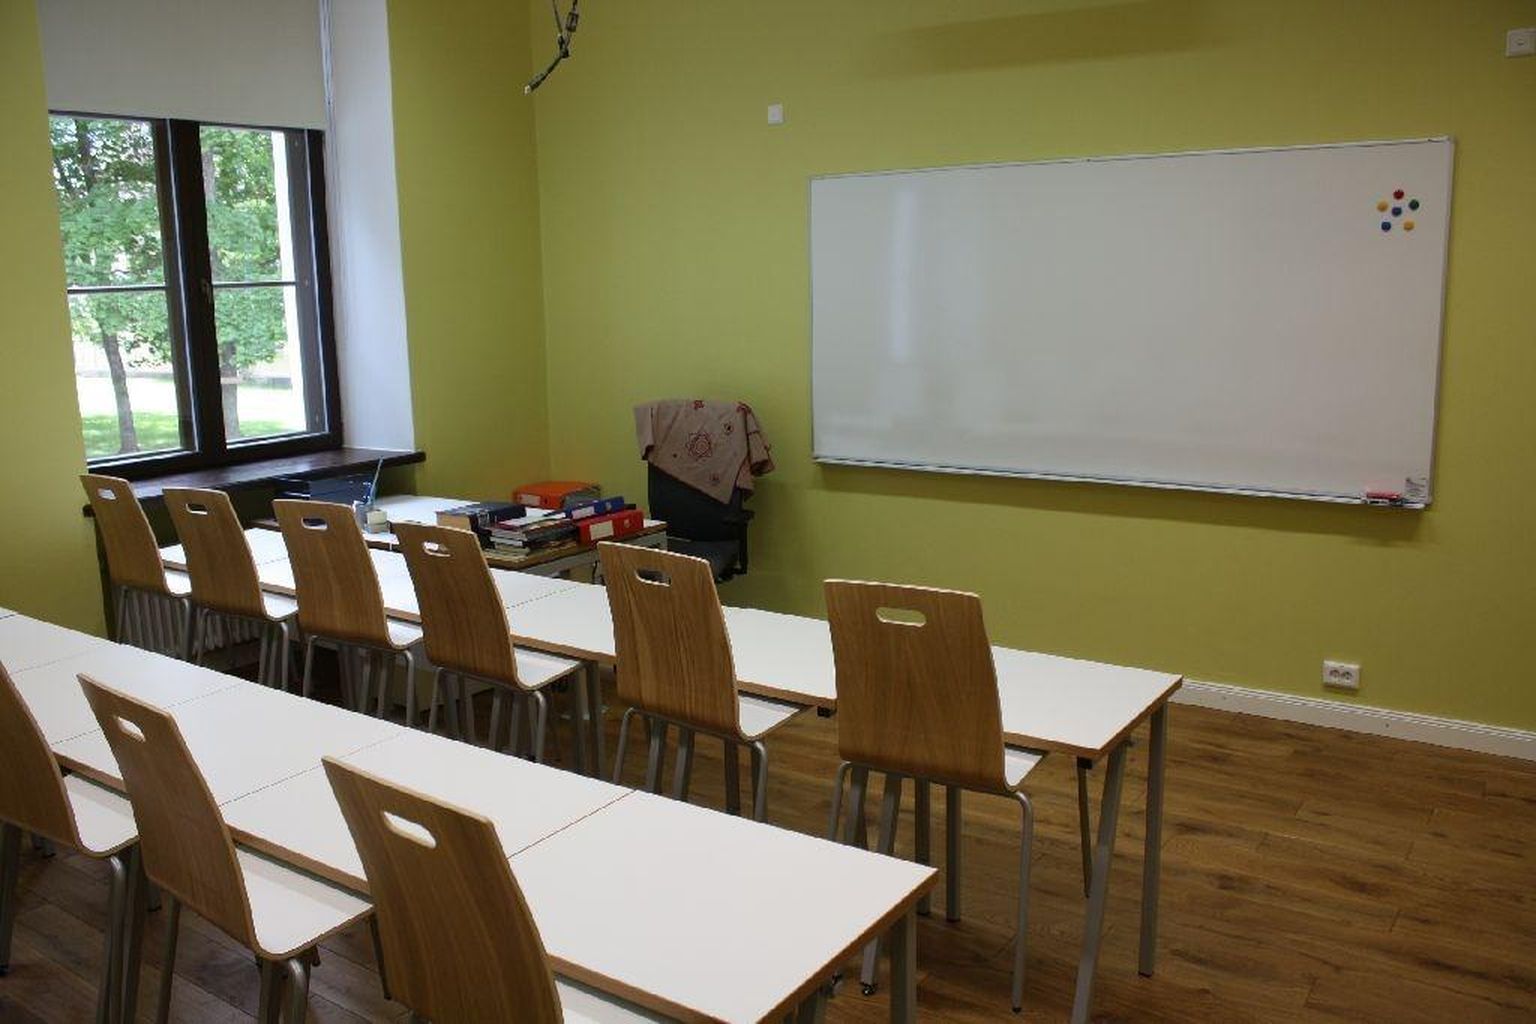 Eestis on sel õppeaastal kokku 31 nädalat, millest 15 nädalat on Harju- ja Ida-Virumaa 10.–11. klassi õpilased olnud distantsõppel, 5.–8. klassi lapsed olid distantsõppel 13 nädalat.